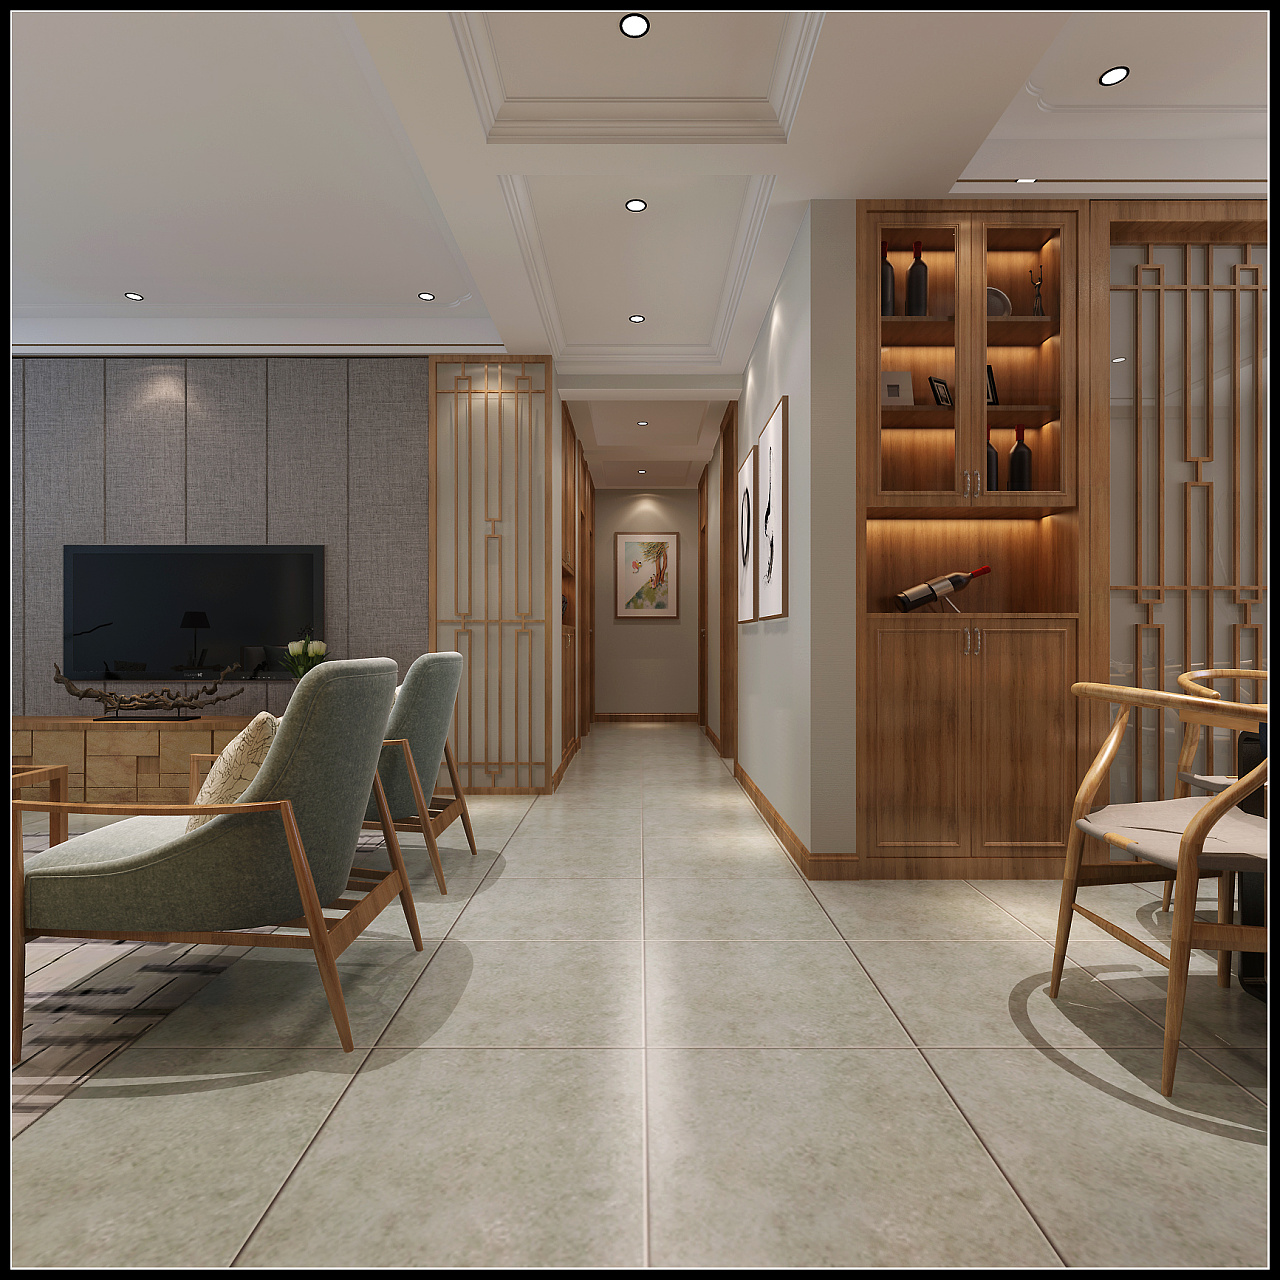 D+日式禅意--道 - 日式风格一室一厅装修效果图 - 墙墙设计设计效果图 - 每平每屋·设计家